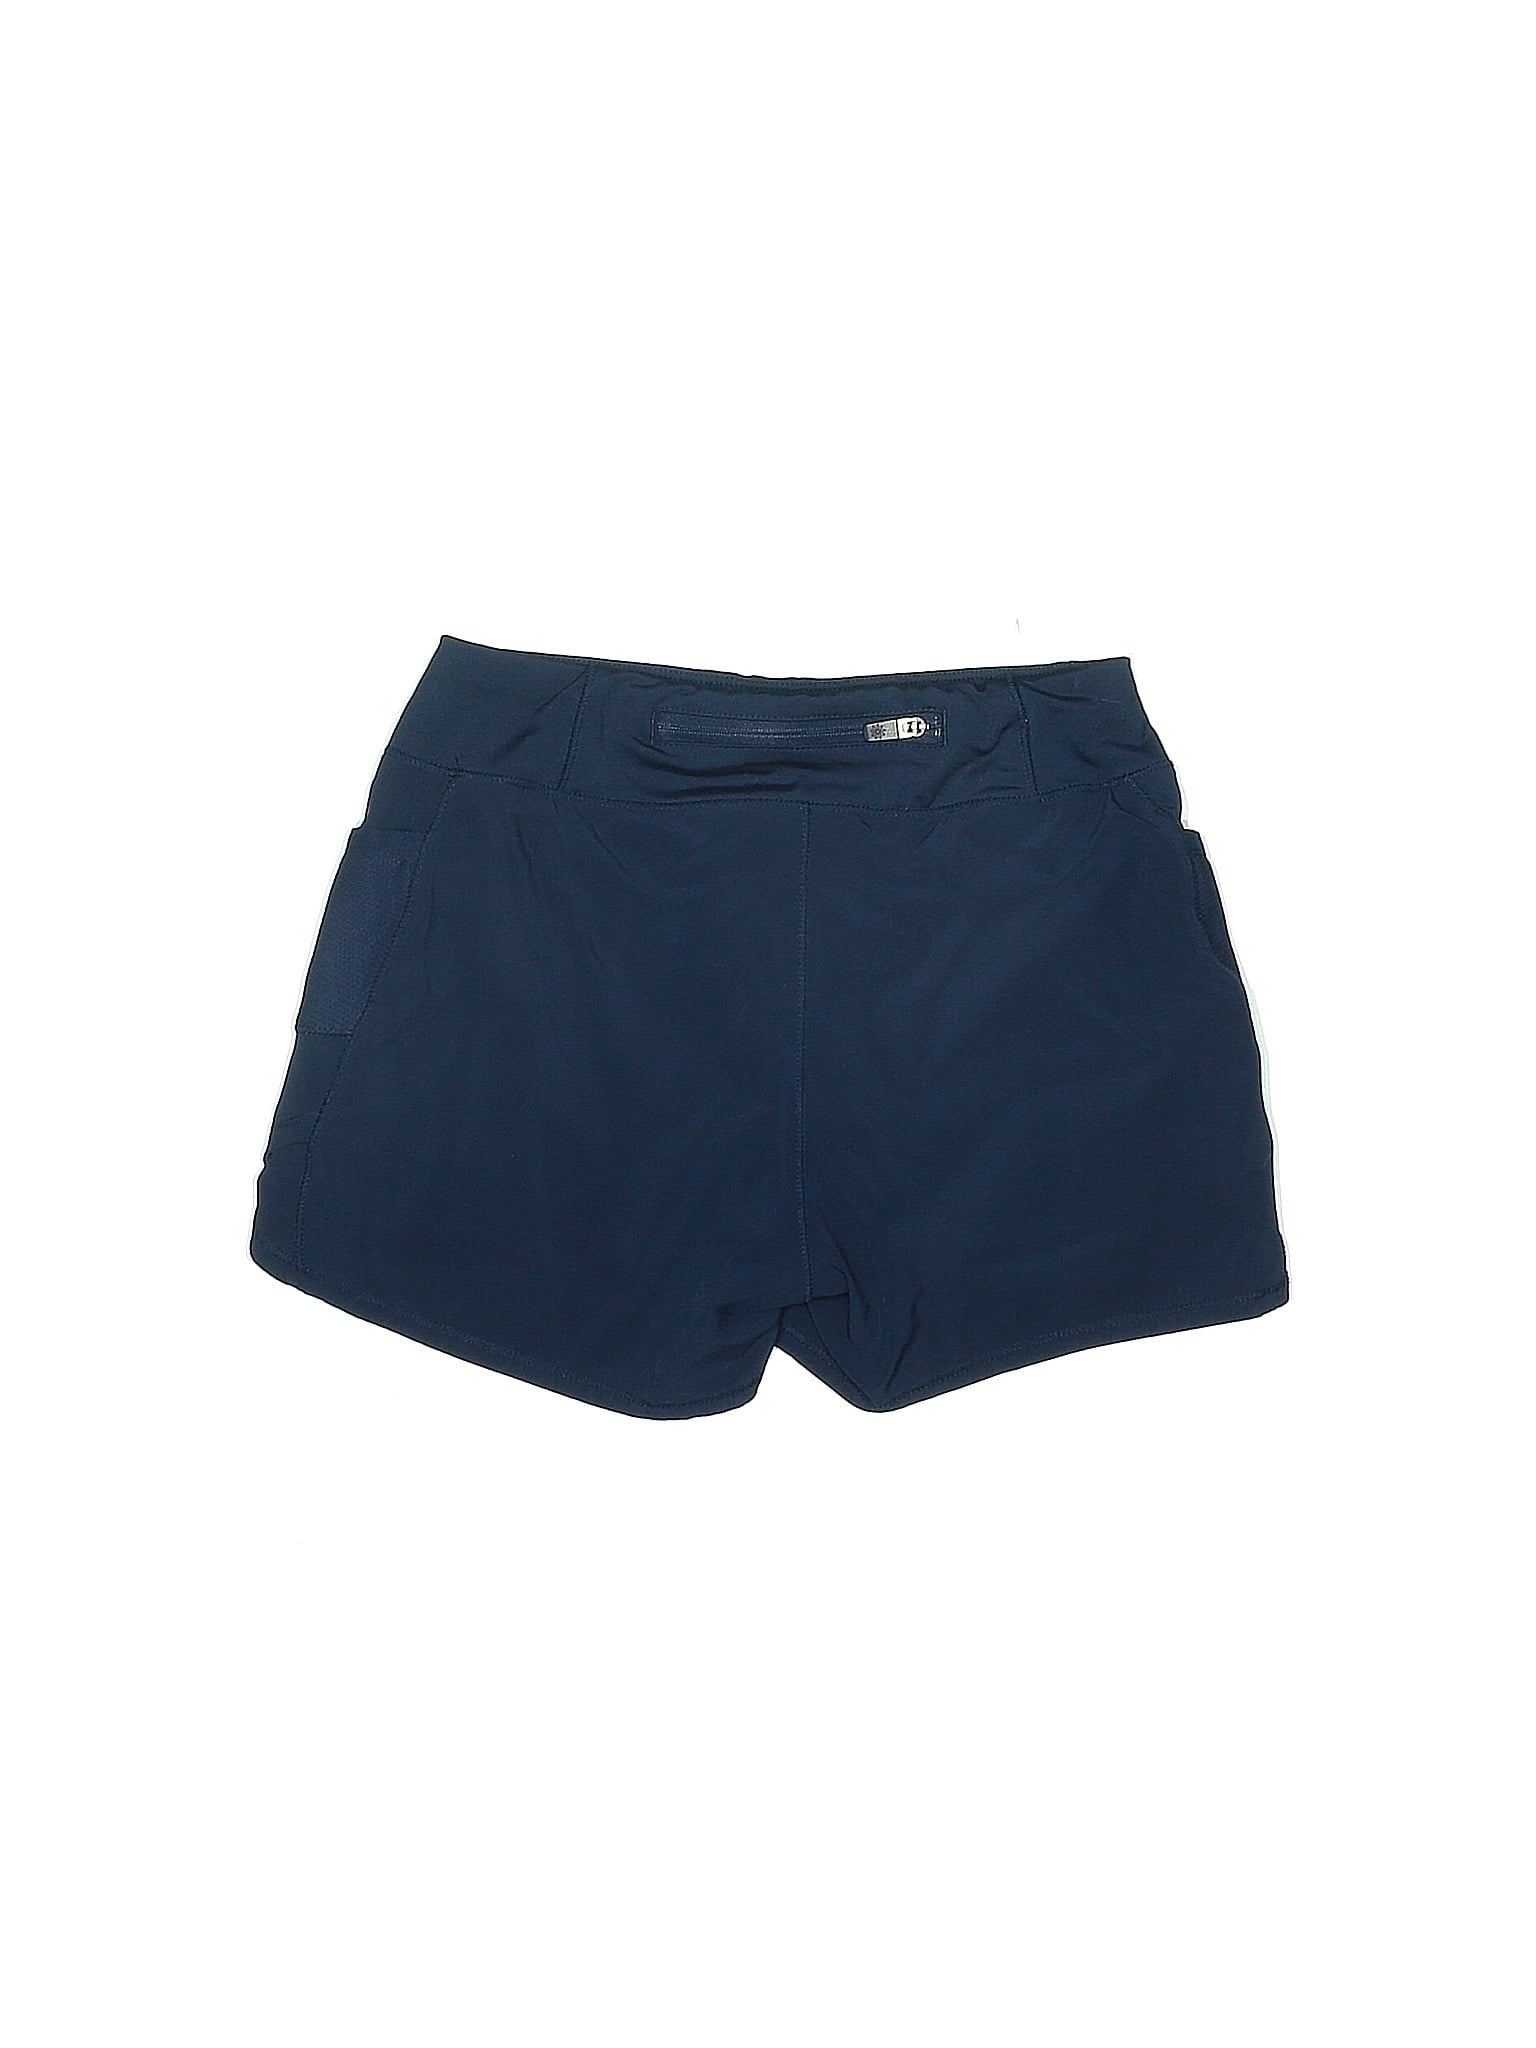 Athletic Shorts size - 8 - 10